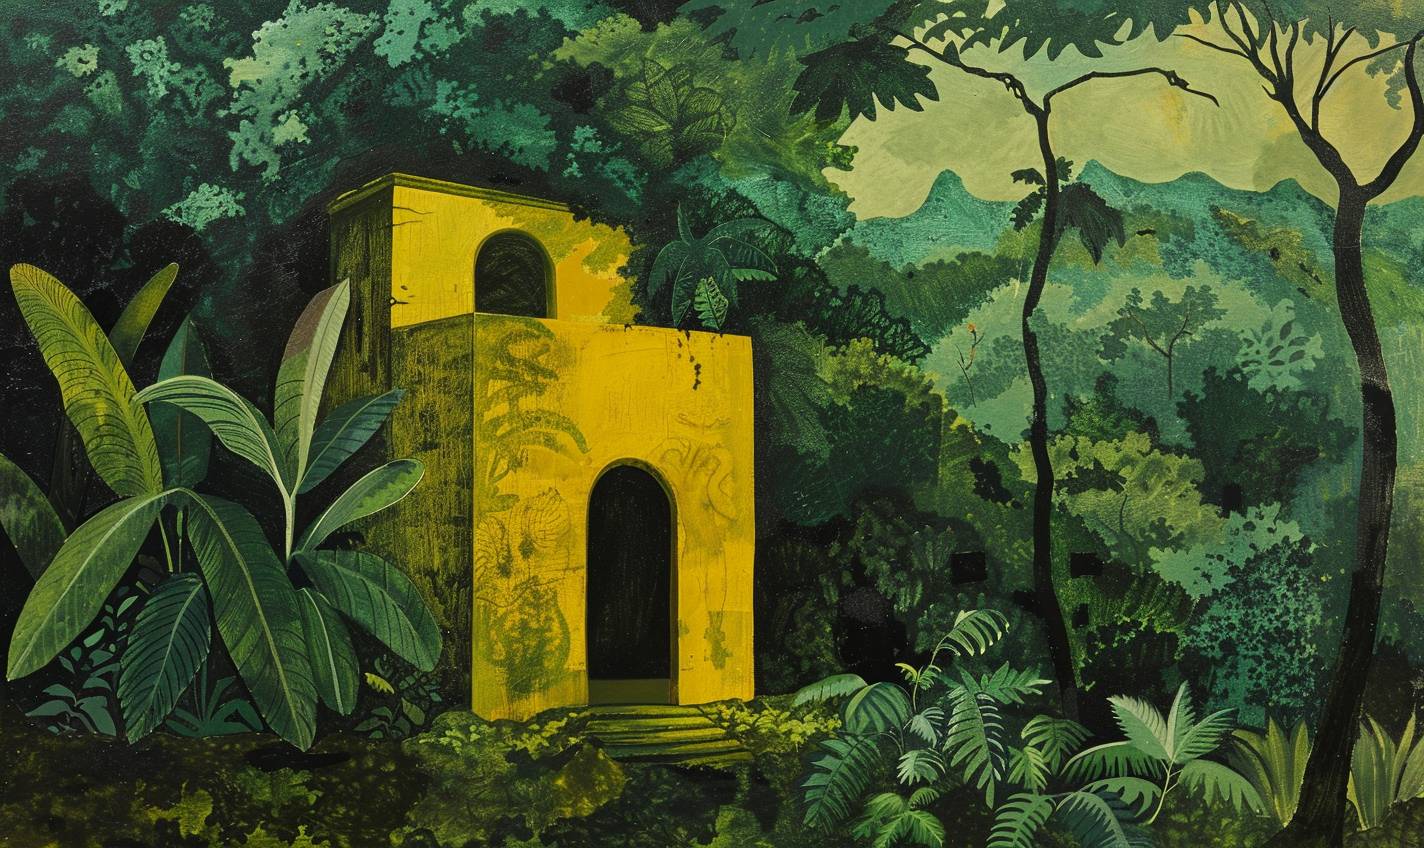 밀턴 에이버리의 스타일로, 정글 속에 숨겨진 잊혀진 사원